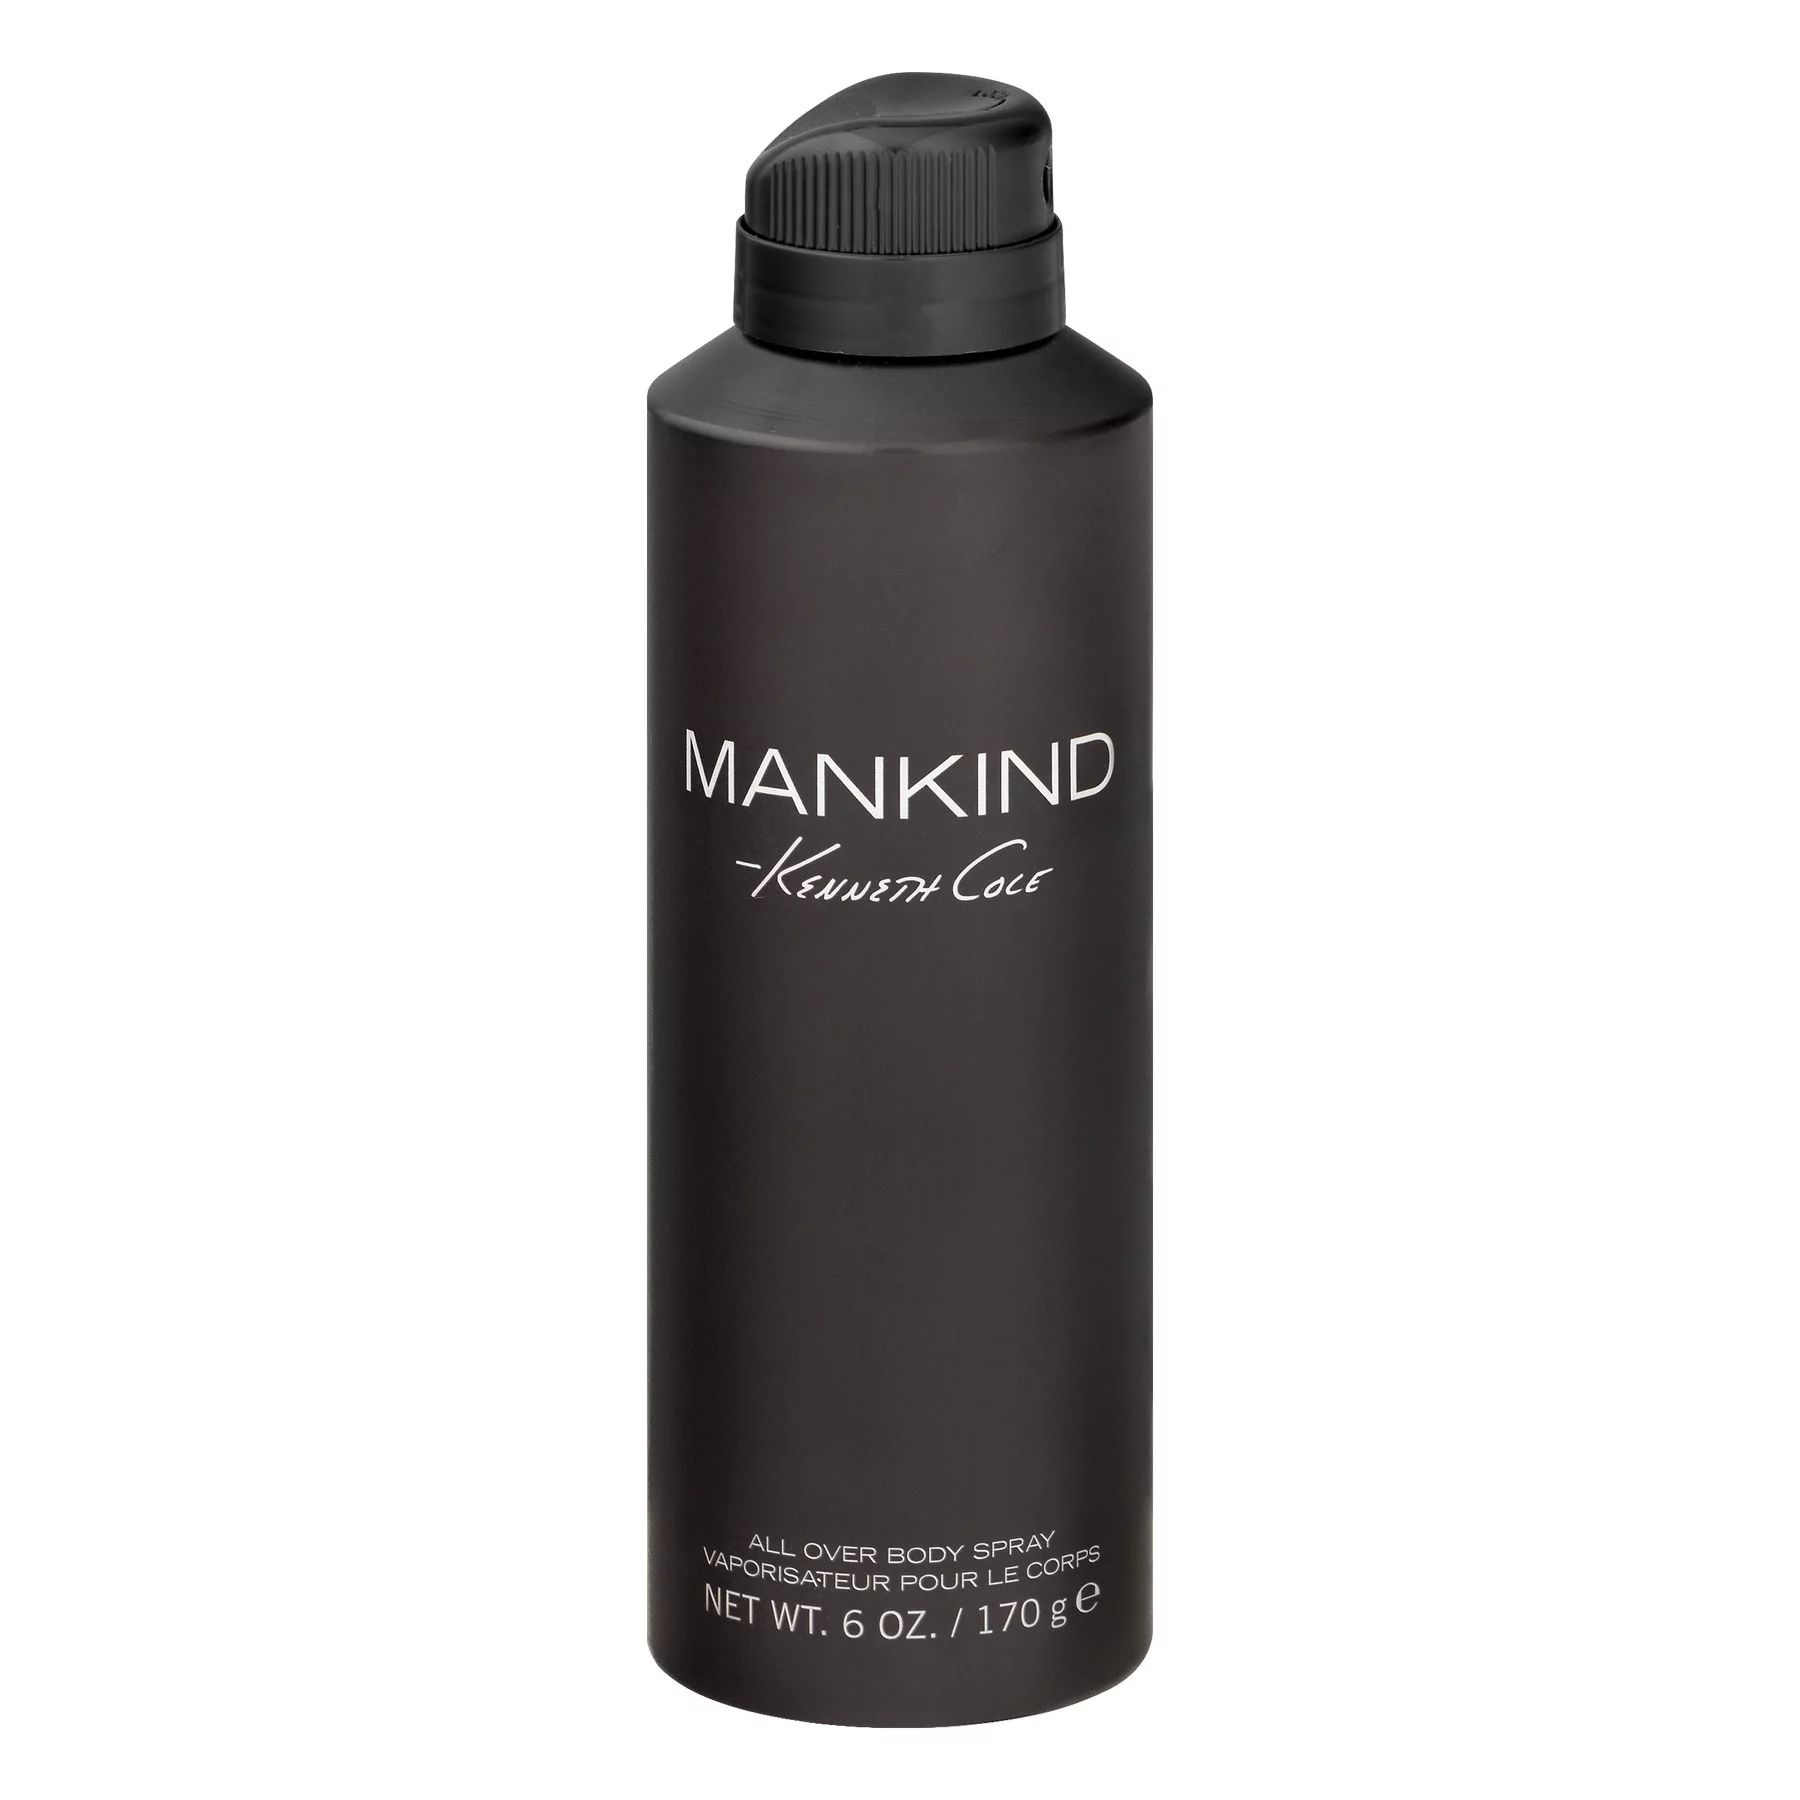 Kenneth Cole Mankind Body Spray for Men, 6 Oz - Walmart.com | Walmart (US)